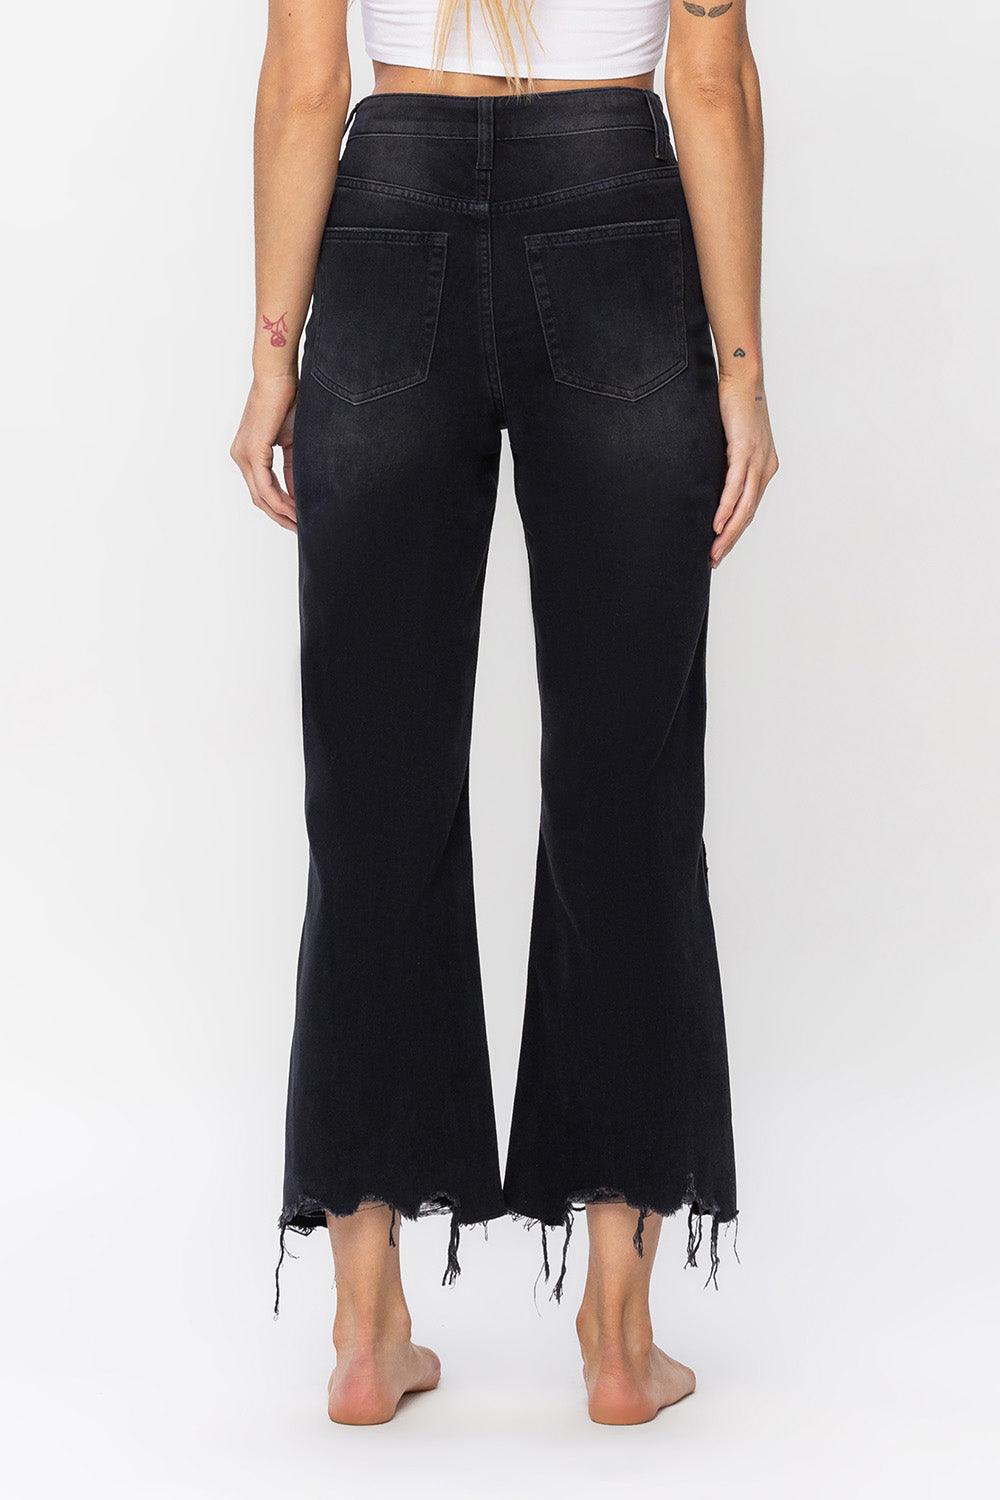 90's Vintage Crop Flare Jeans Black